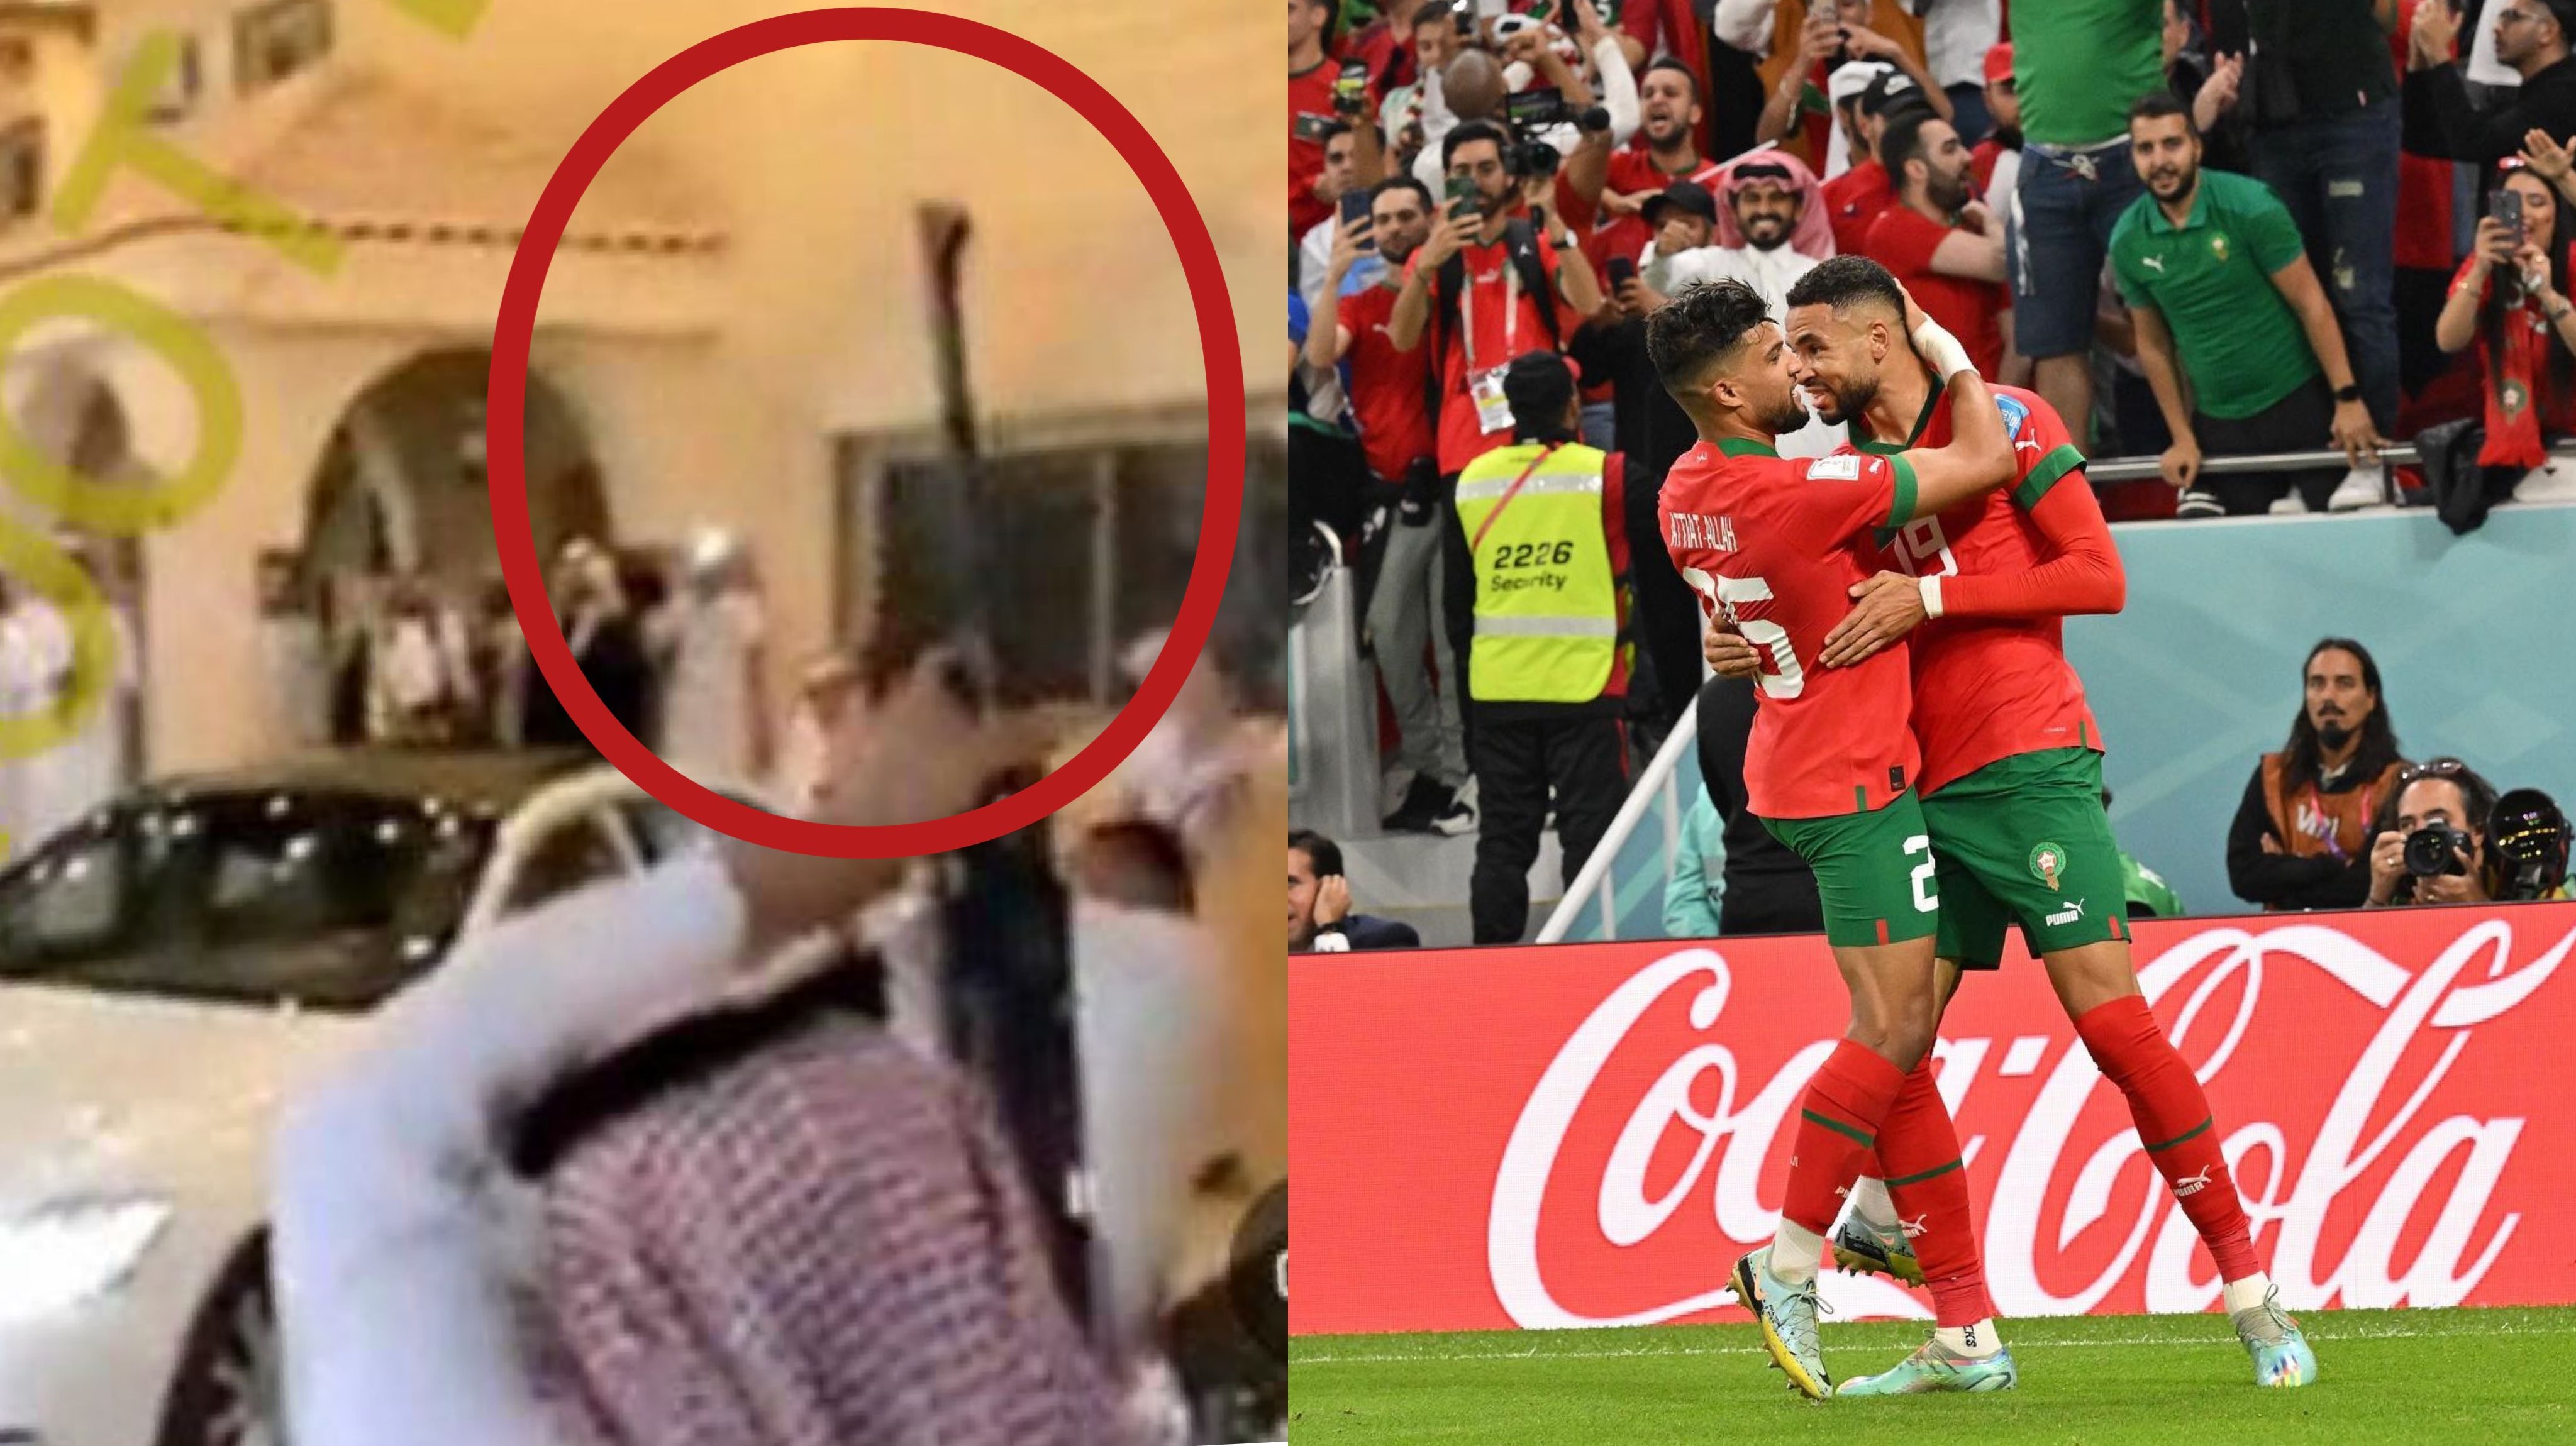 Cek fakta: Penampakan pendukung timnas Maroko rayakan kemenangan sambil tembakan peluru